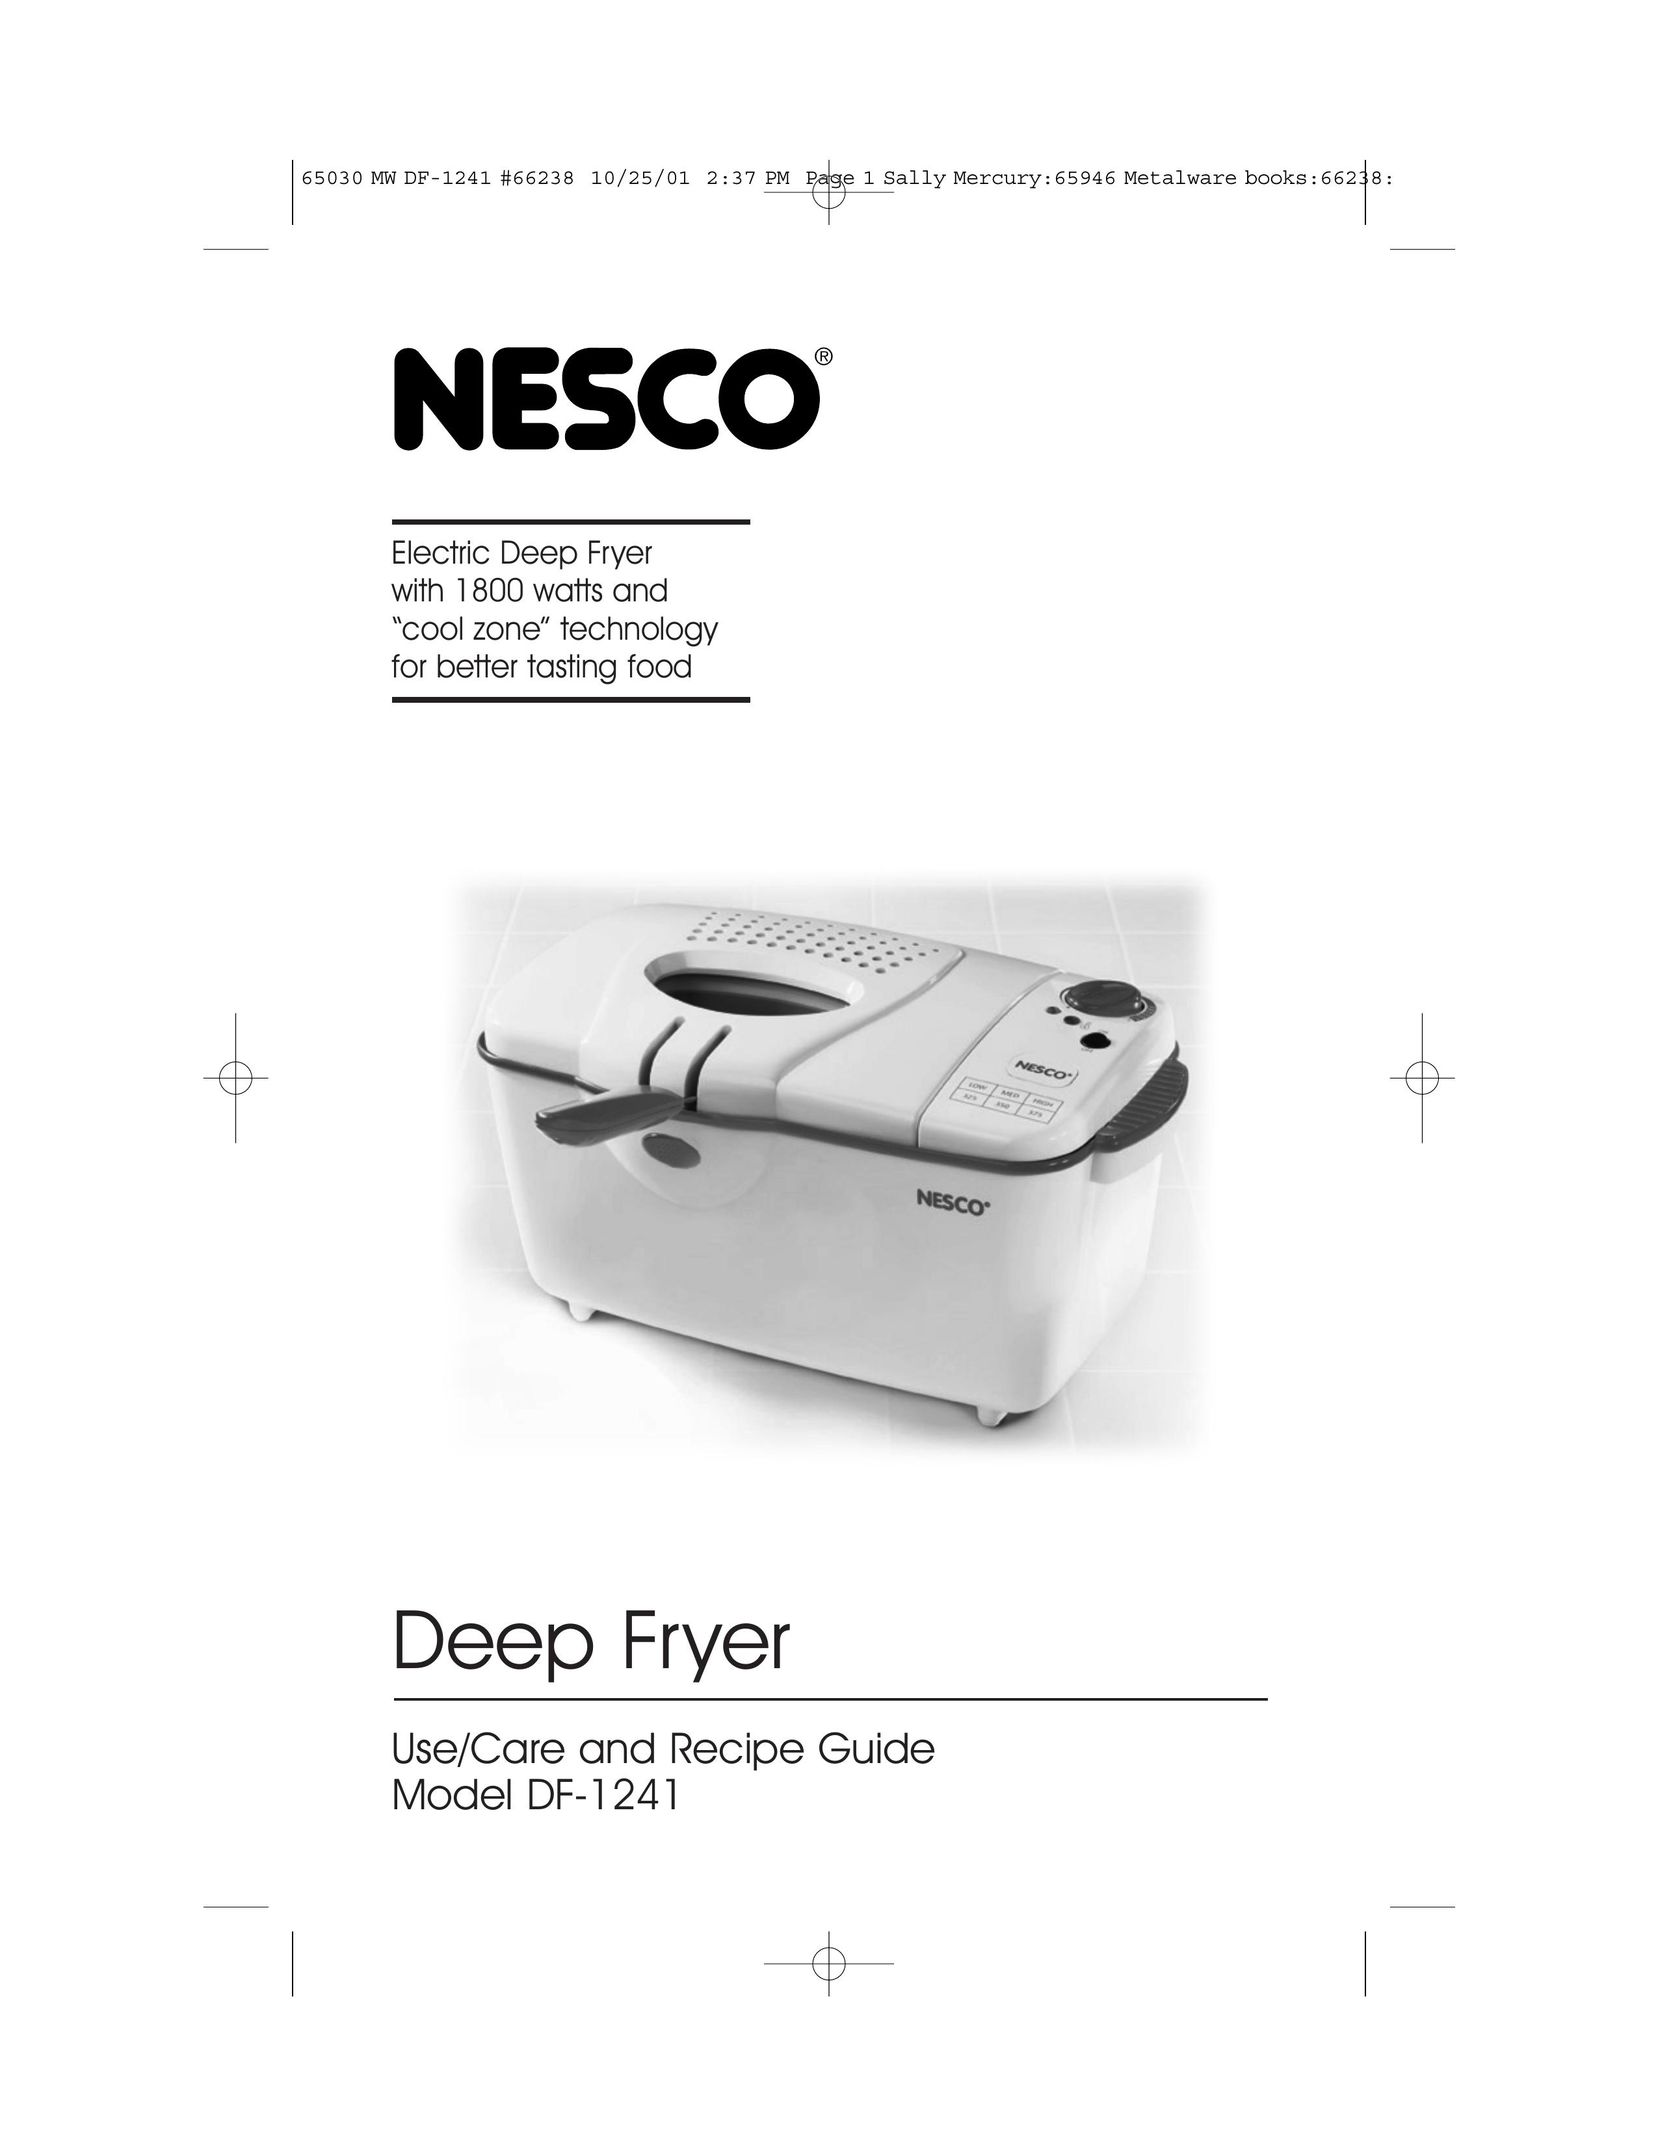 Nesco DF-1241 Fryer User Manual